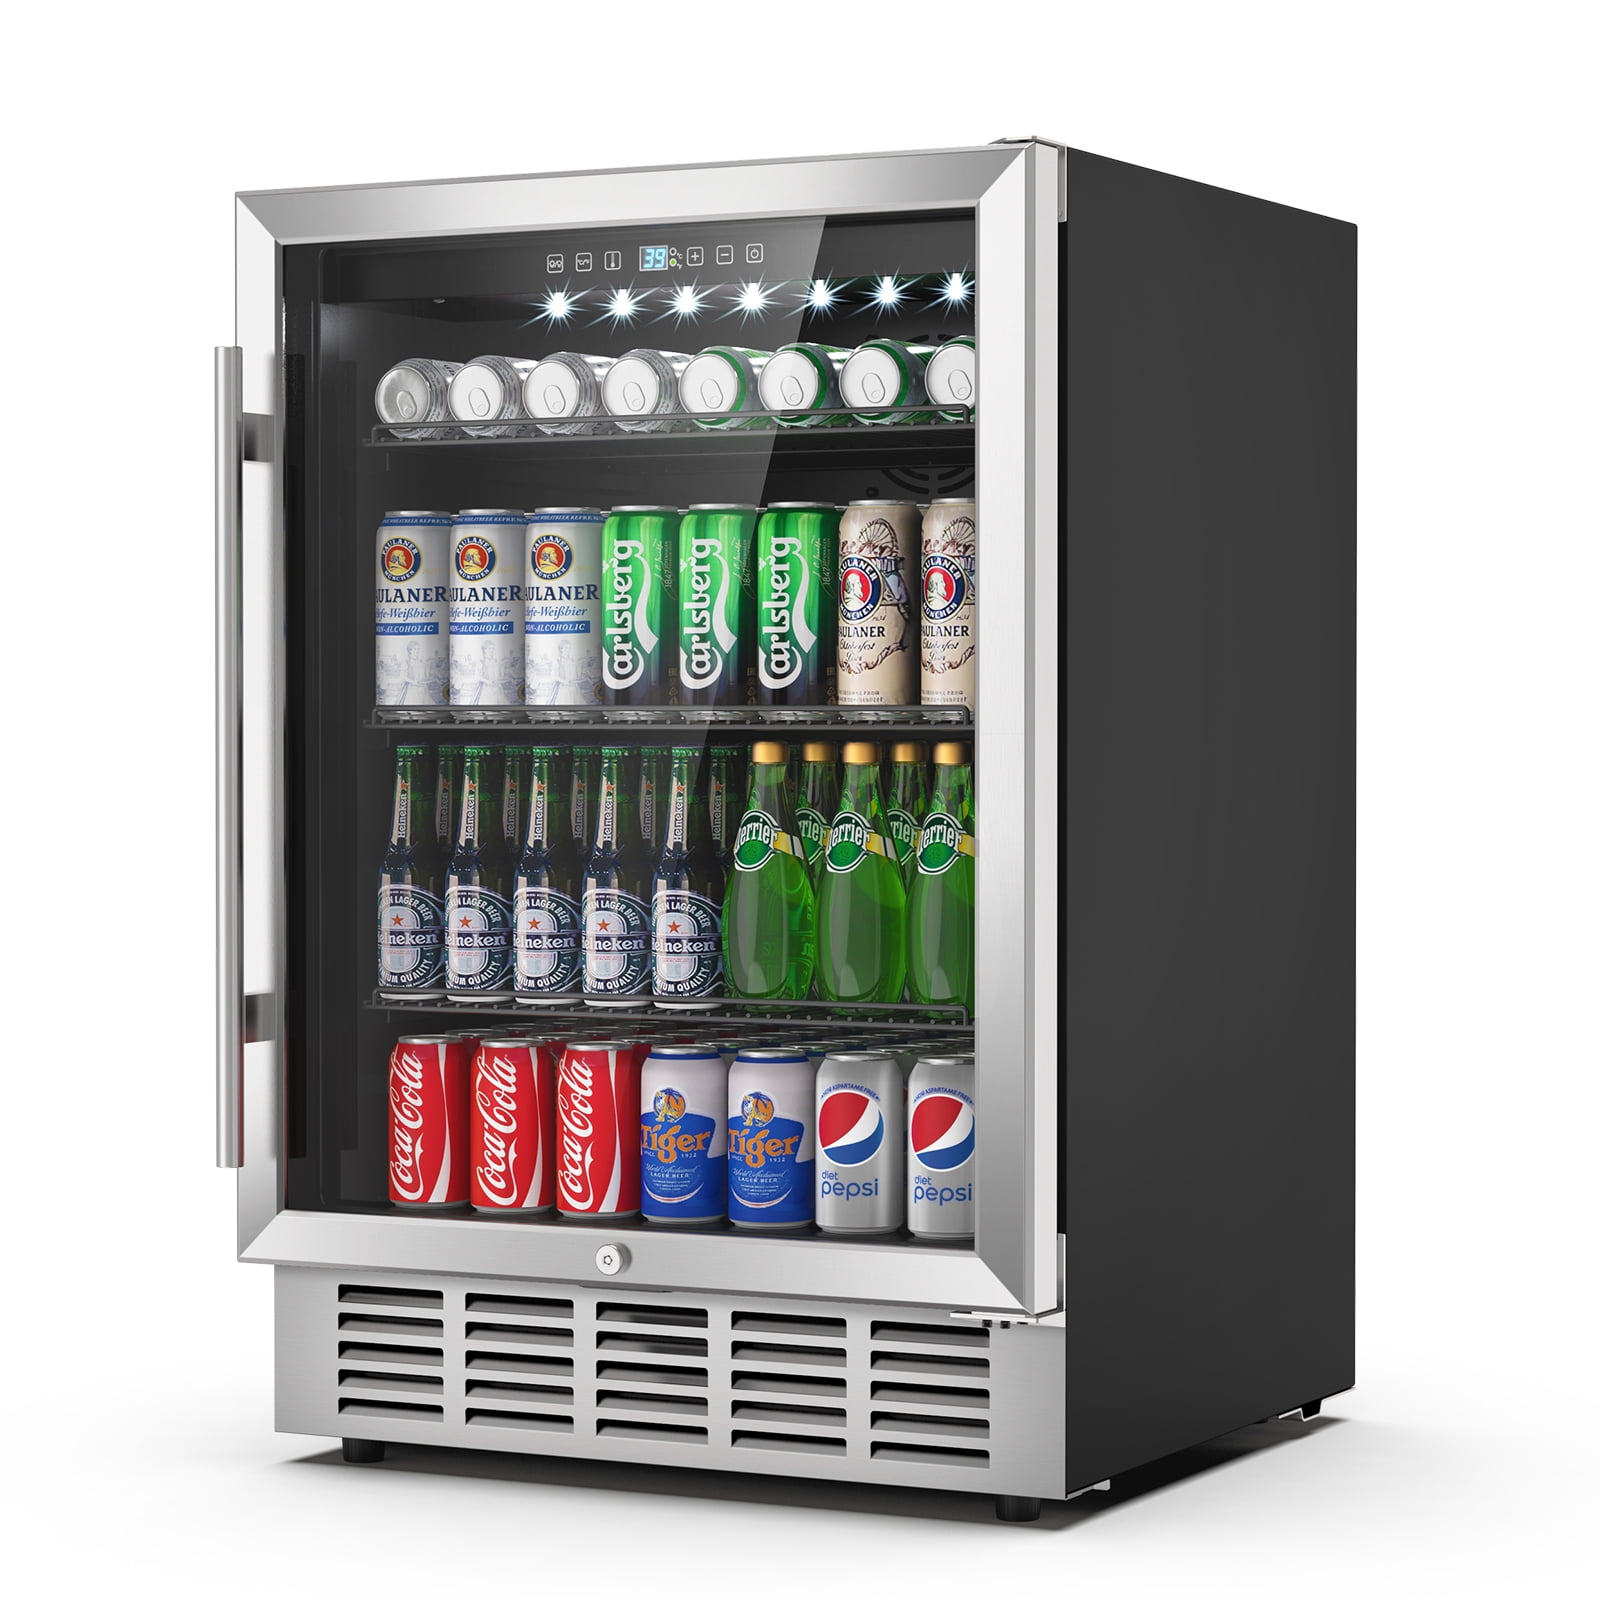 Coca-Cola Display Coolers & Refrigerators